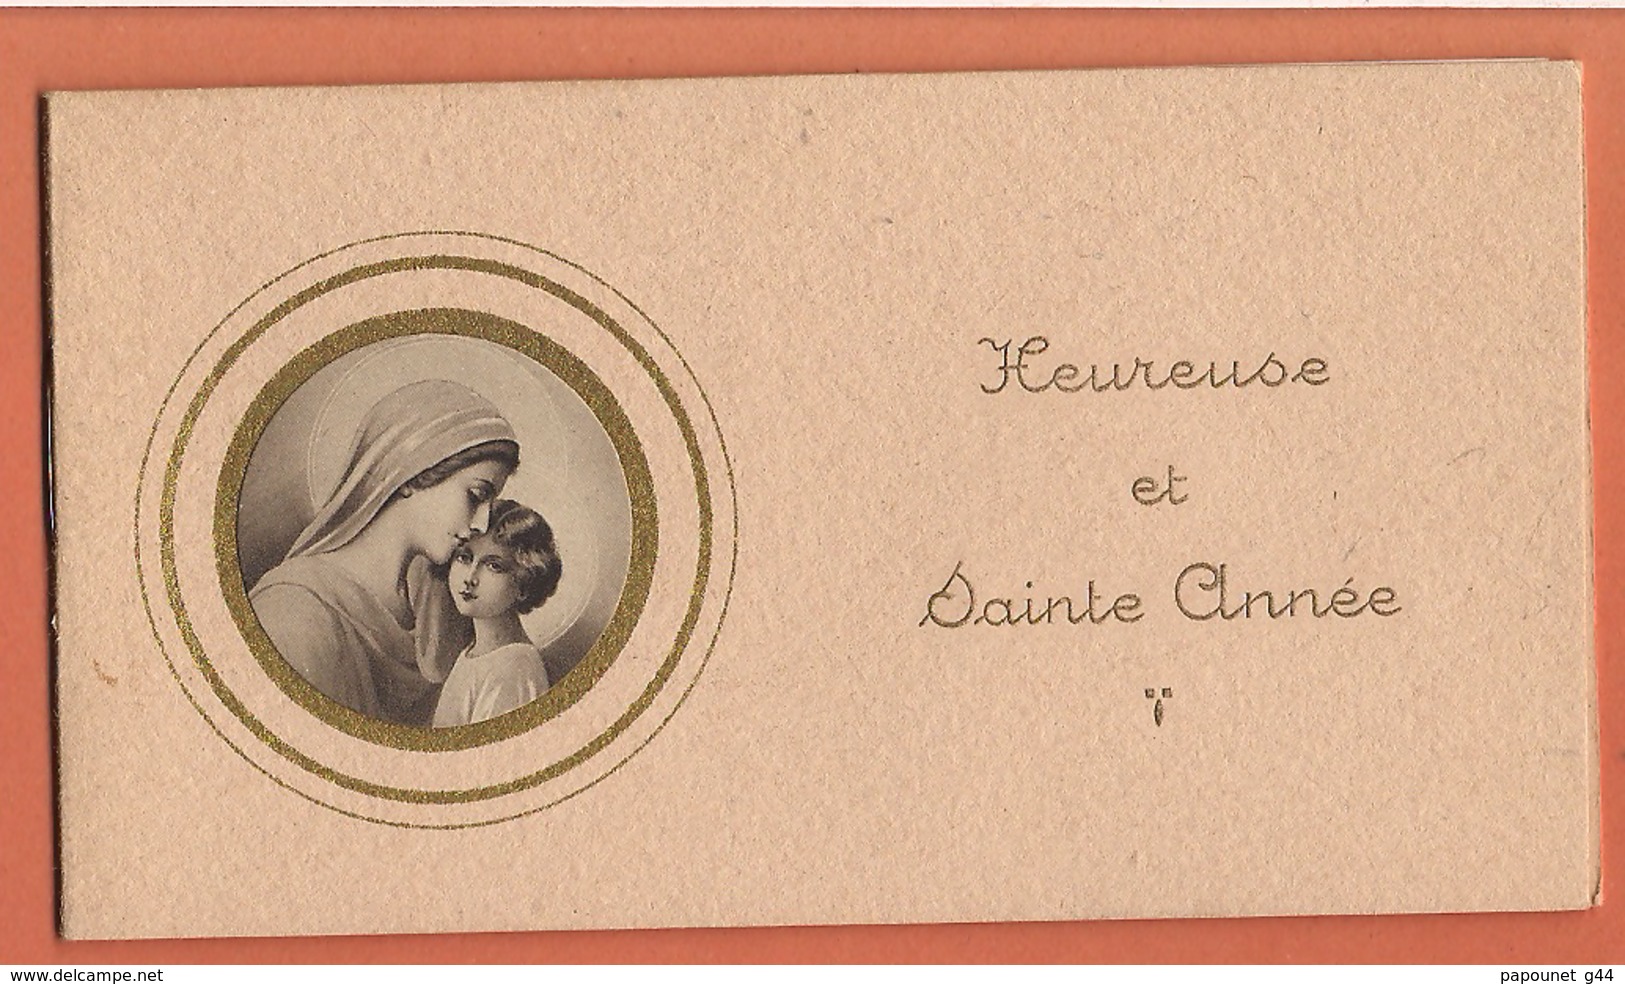 Almanach Religieux 1944 ( Heureuse Et Sainte Année ) - Small : 1941-60